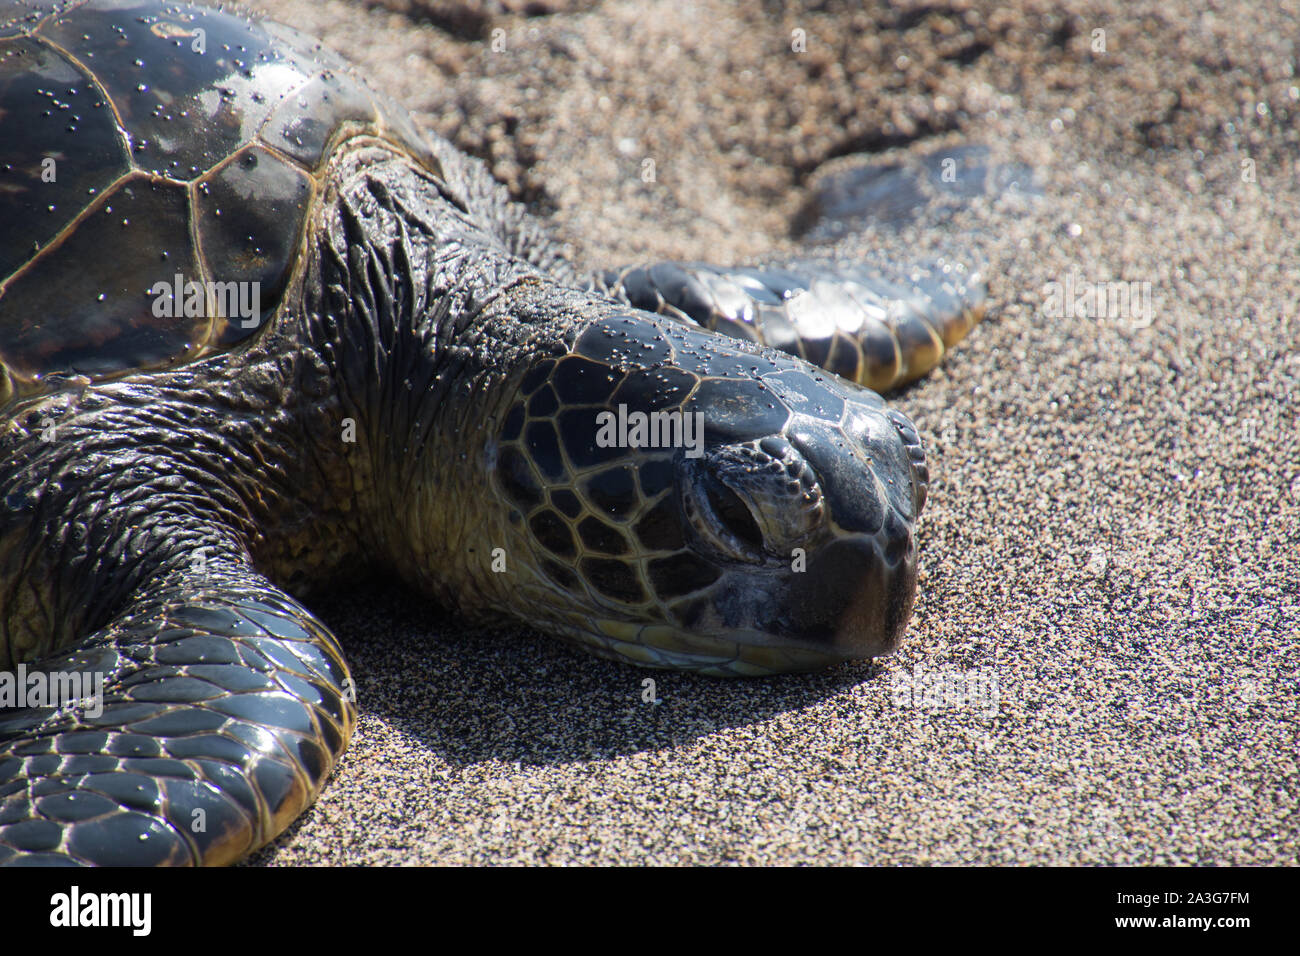 Una tartaruga marina si trova con la sua testa su di una spiaggia di sabbia nera dopo aver strisciato fuori del Pacifico. Foto scattata vicino a Kona sulla Big Island, Hawaii, STATI UNITI D'AMERICA Foto Stock